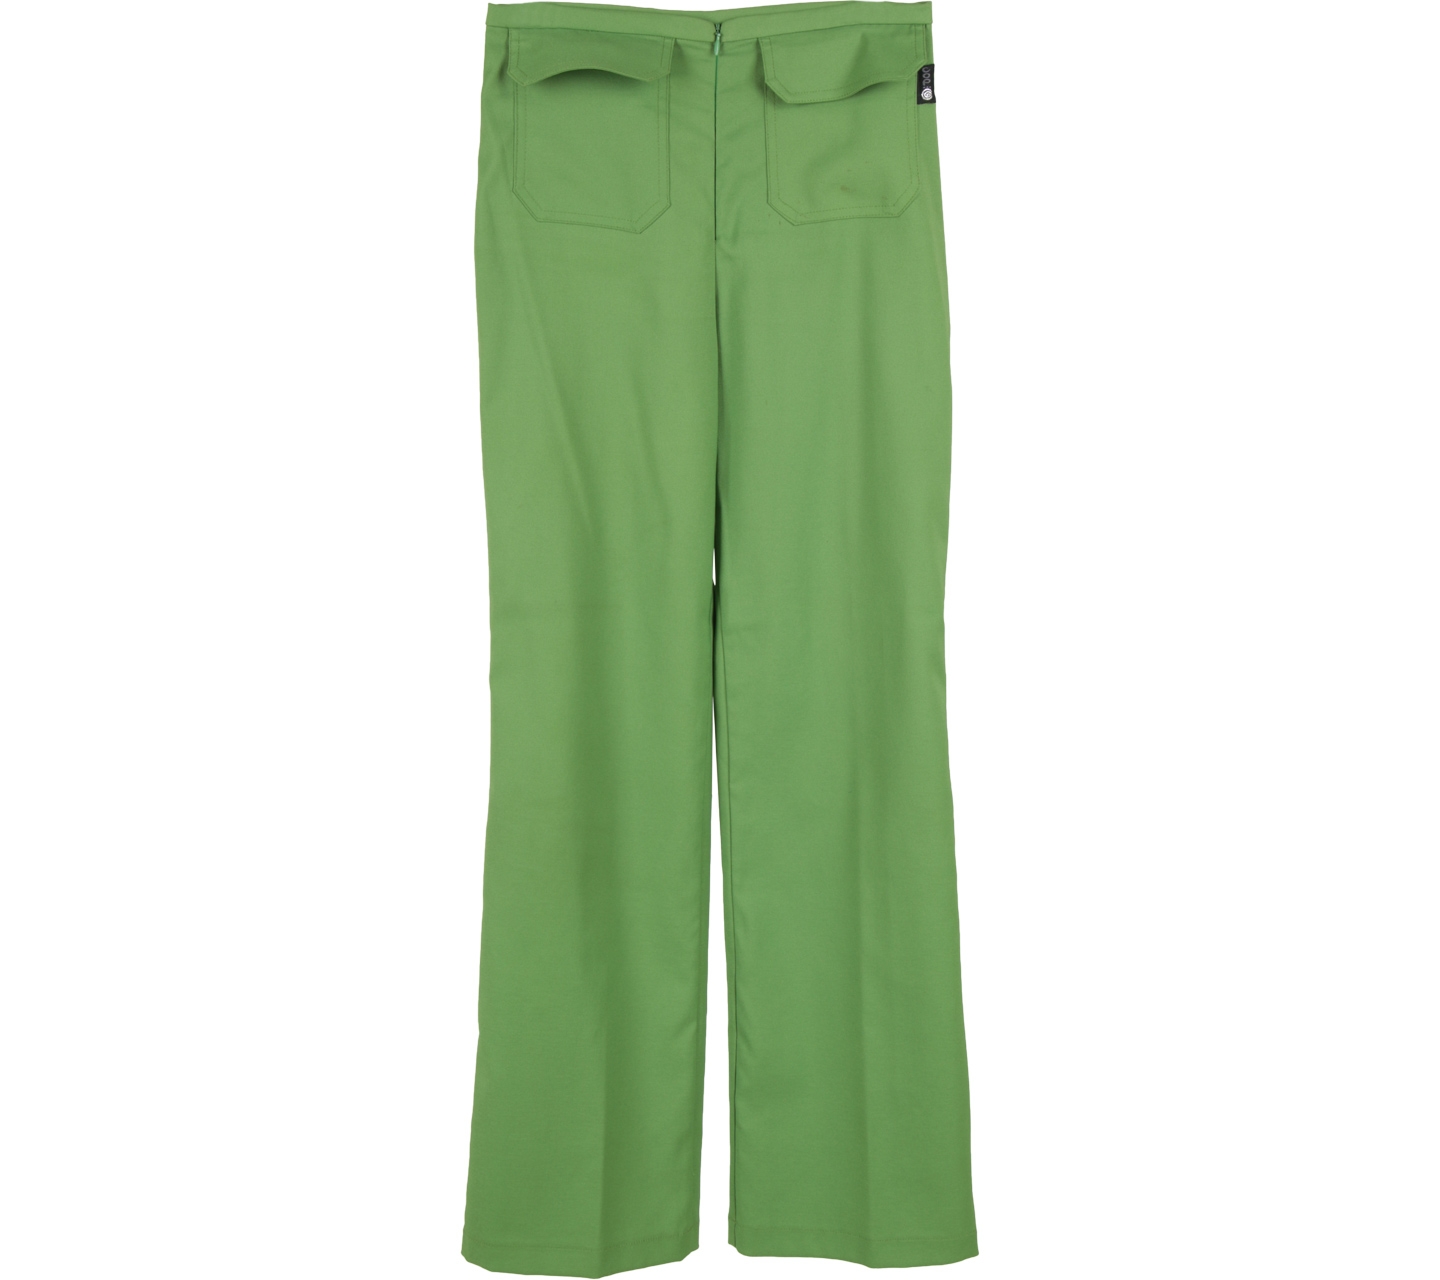 Cop. Copine Green Pants